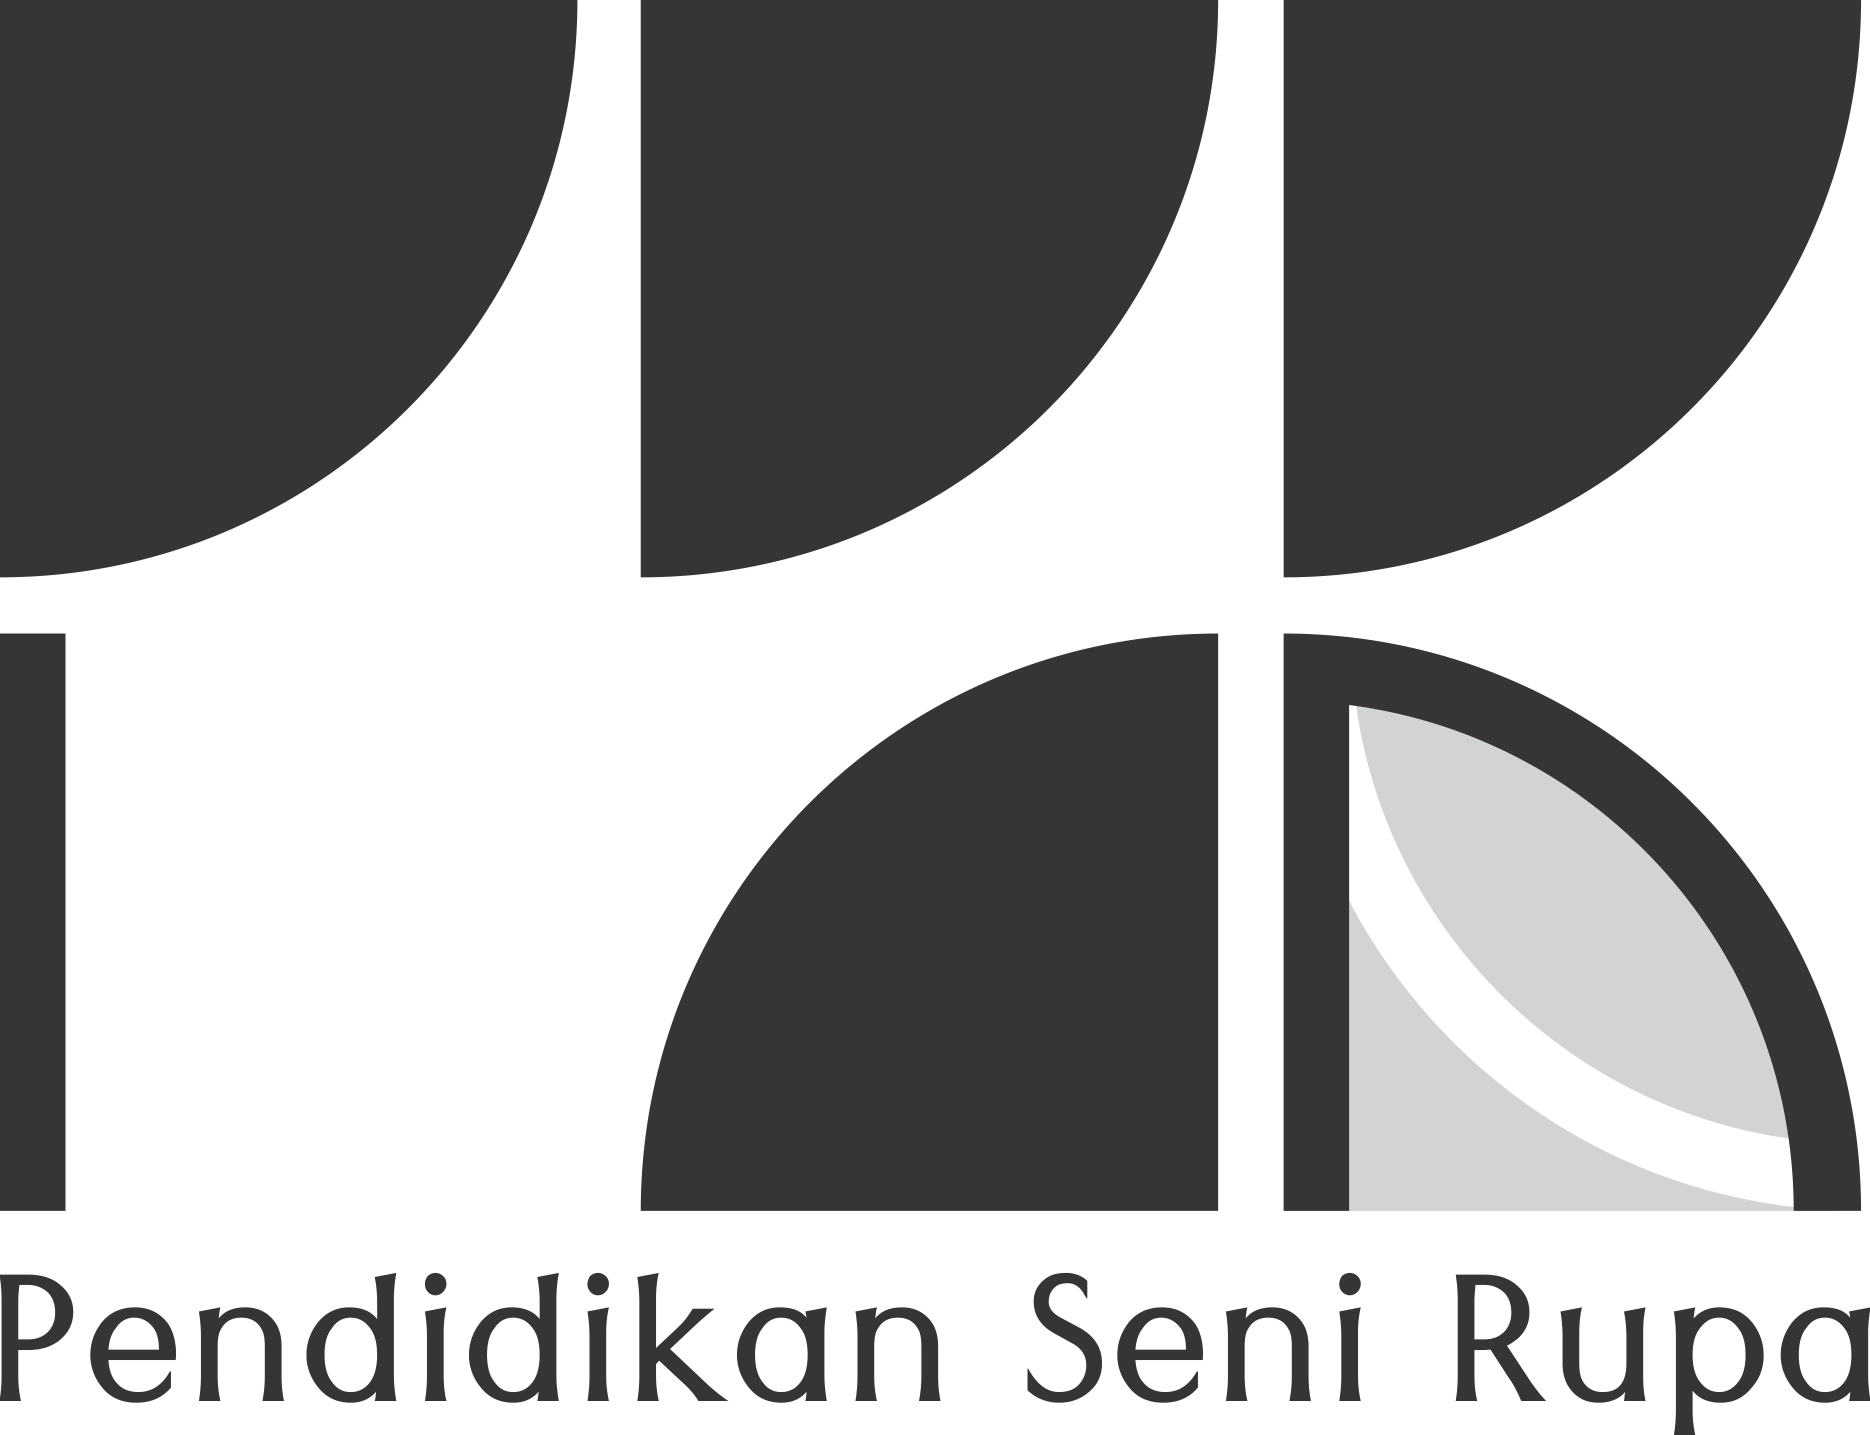 Pendidikan Seni Rupa Universitas Negeri Padang